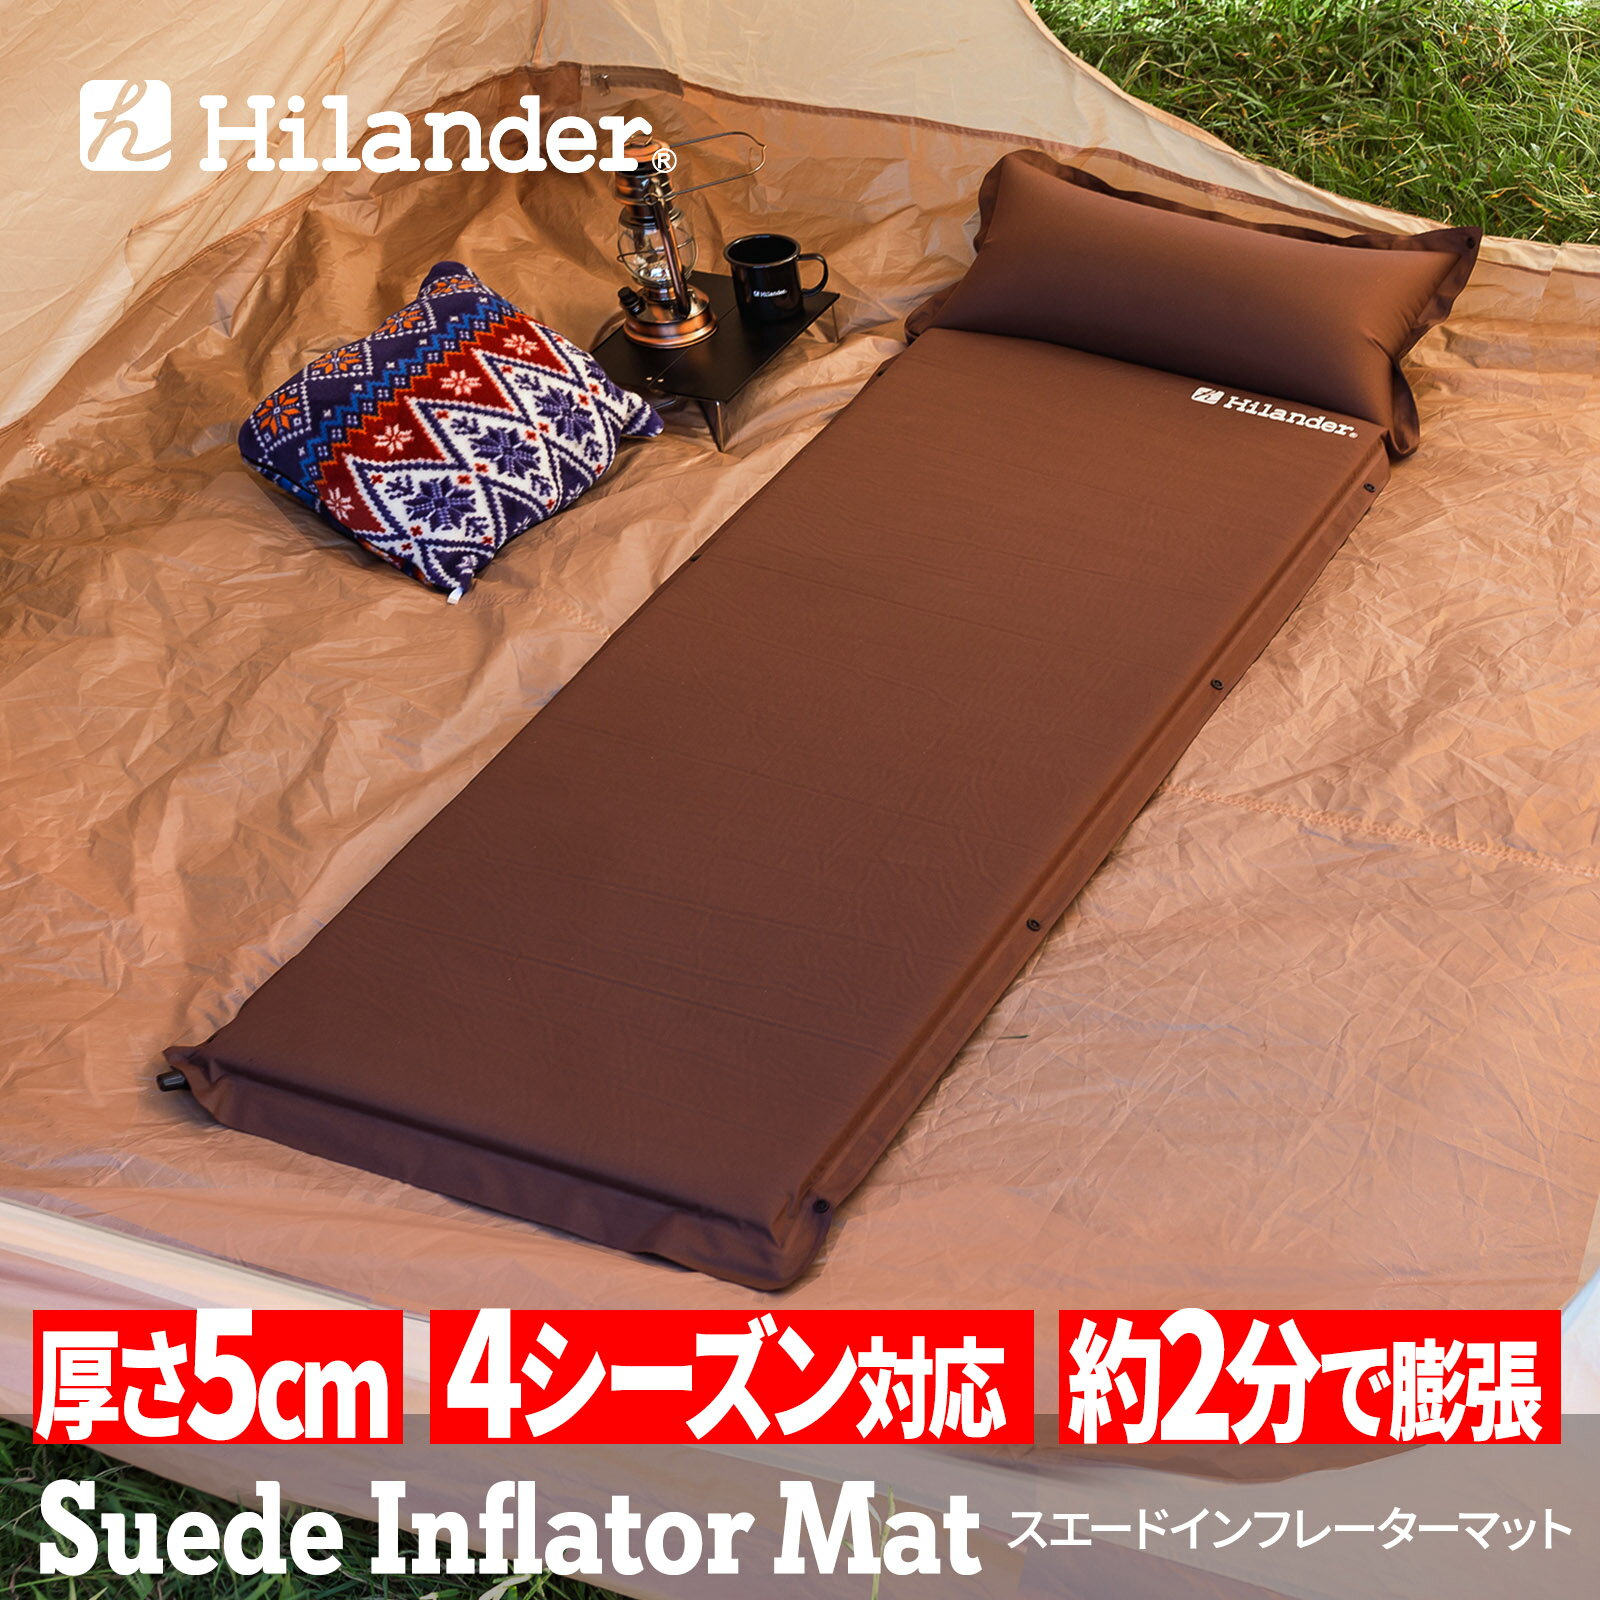 ハイランダー スエードインフレーターマット(枕付きタイプ) 5.0cm シングル ブラウン